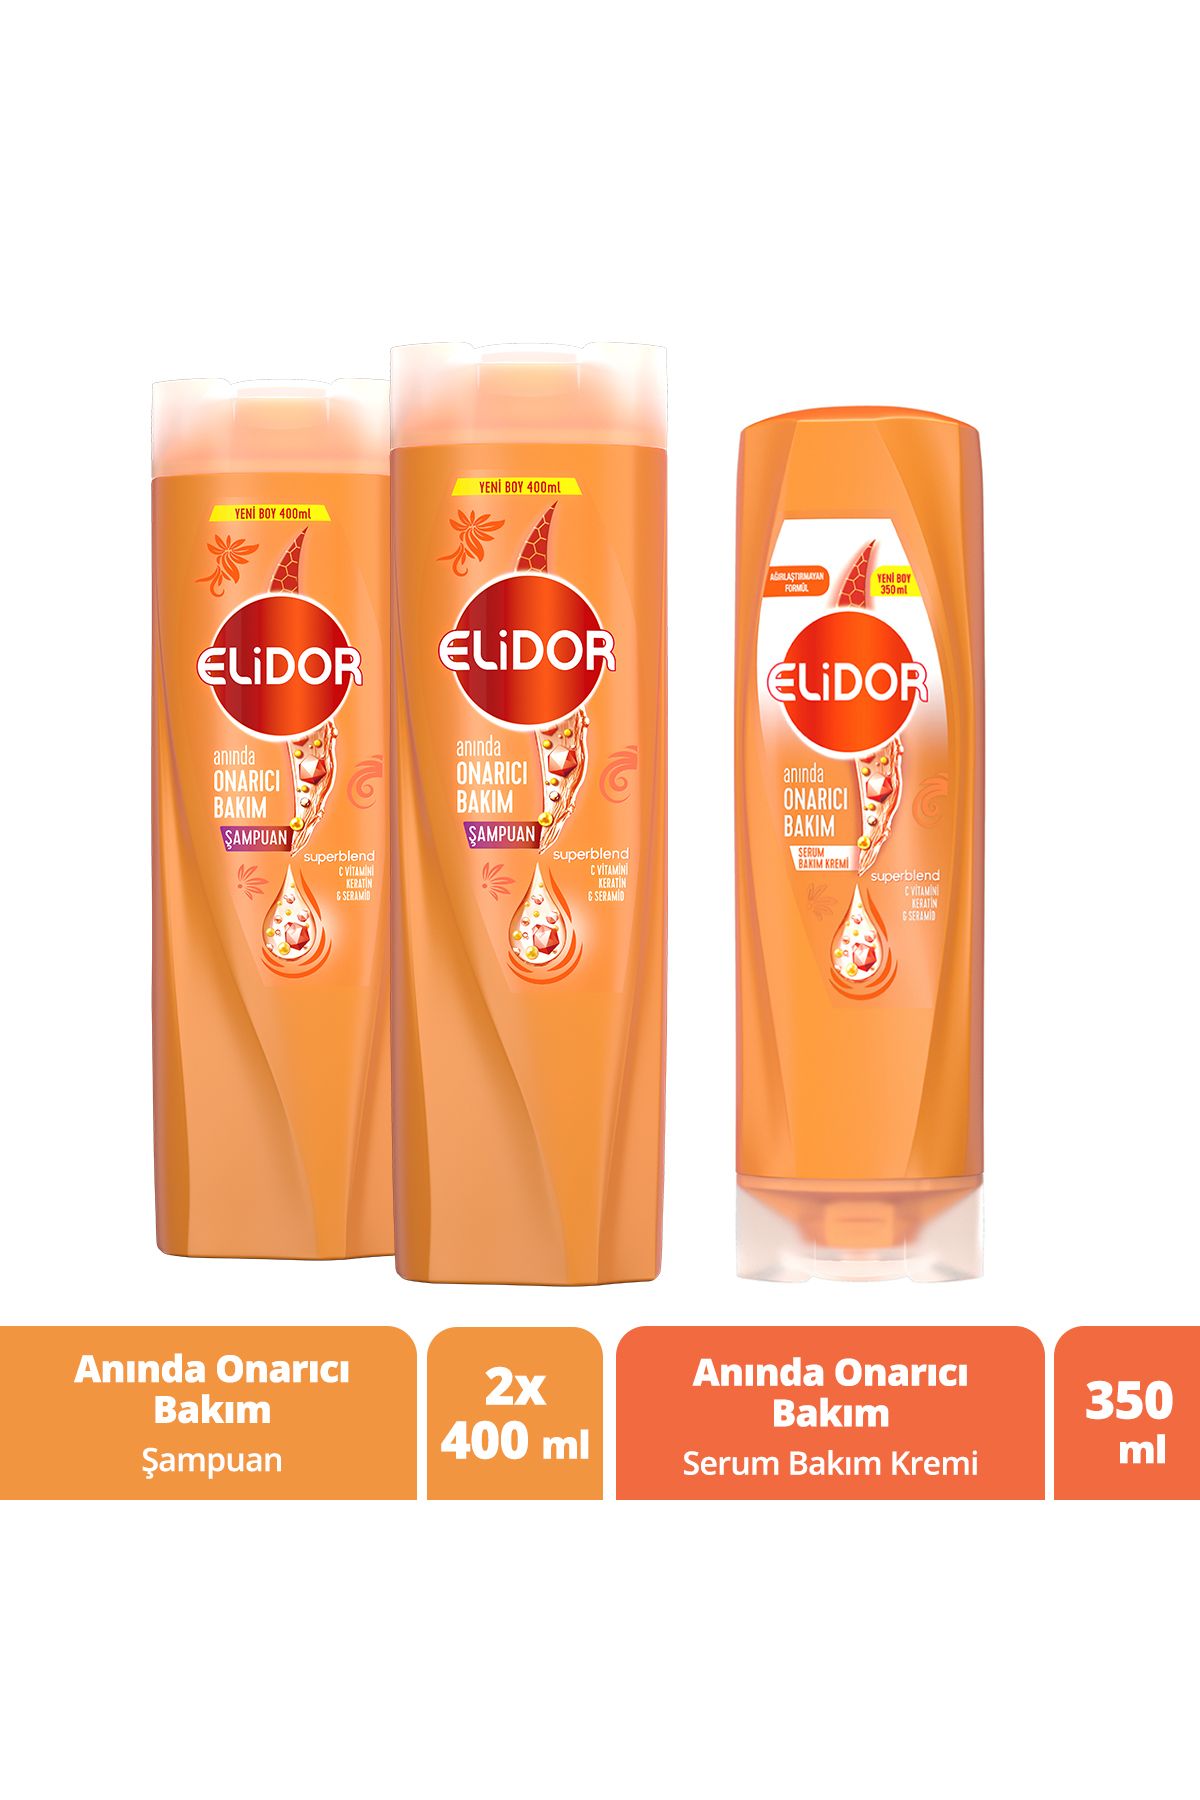 Elidor Superblend Saç Bakım Şampuanı Anında Onarıcı Bakım 400 ml X2 Serum Bakım Kremi 350 ml